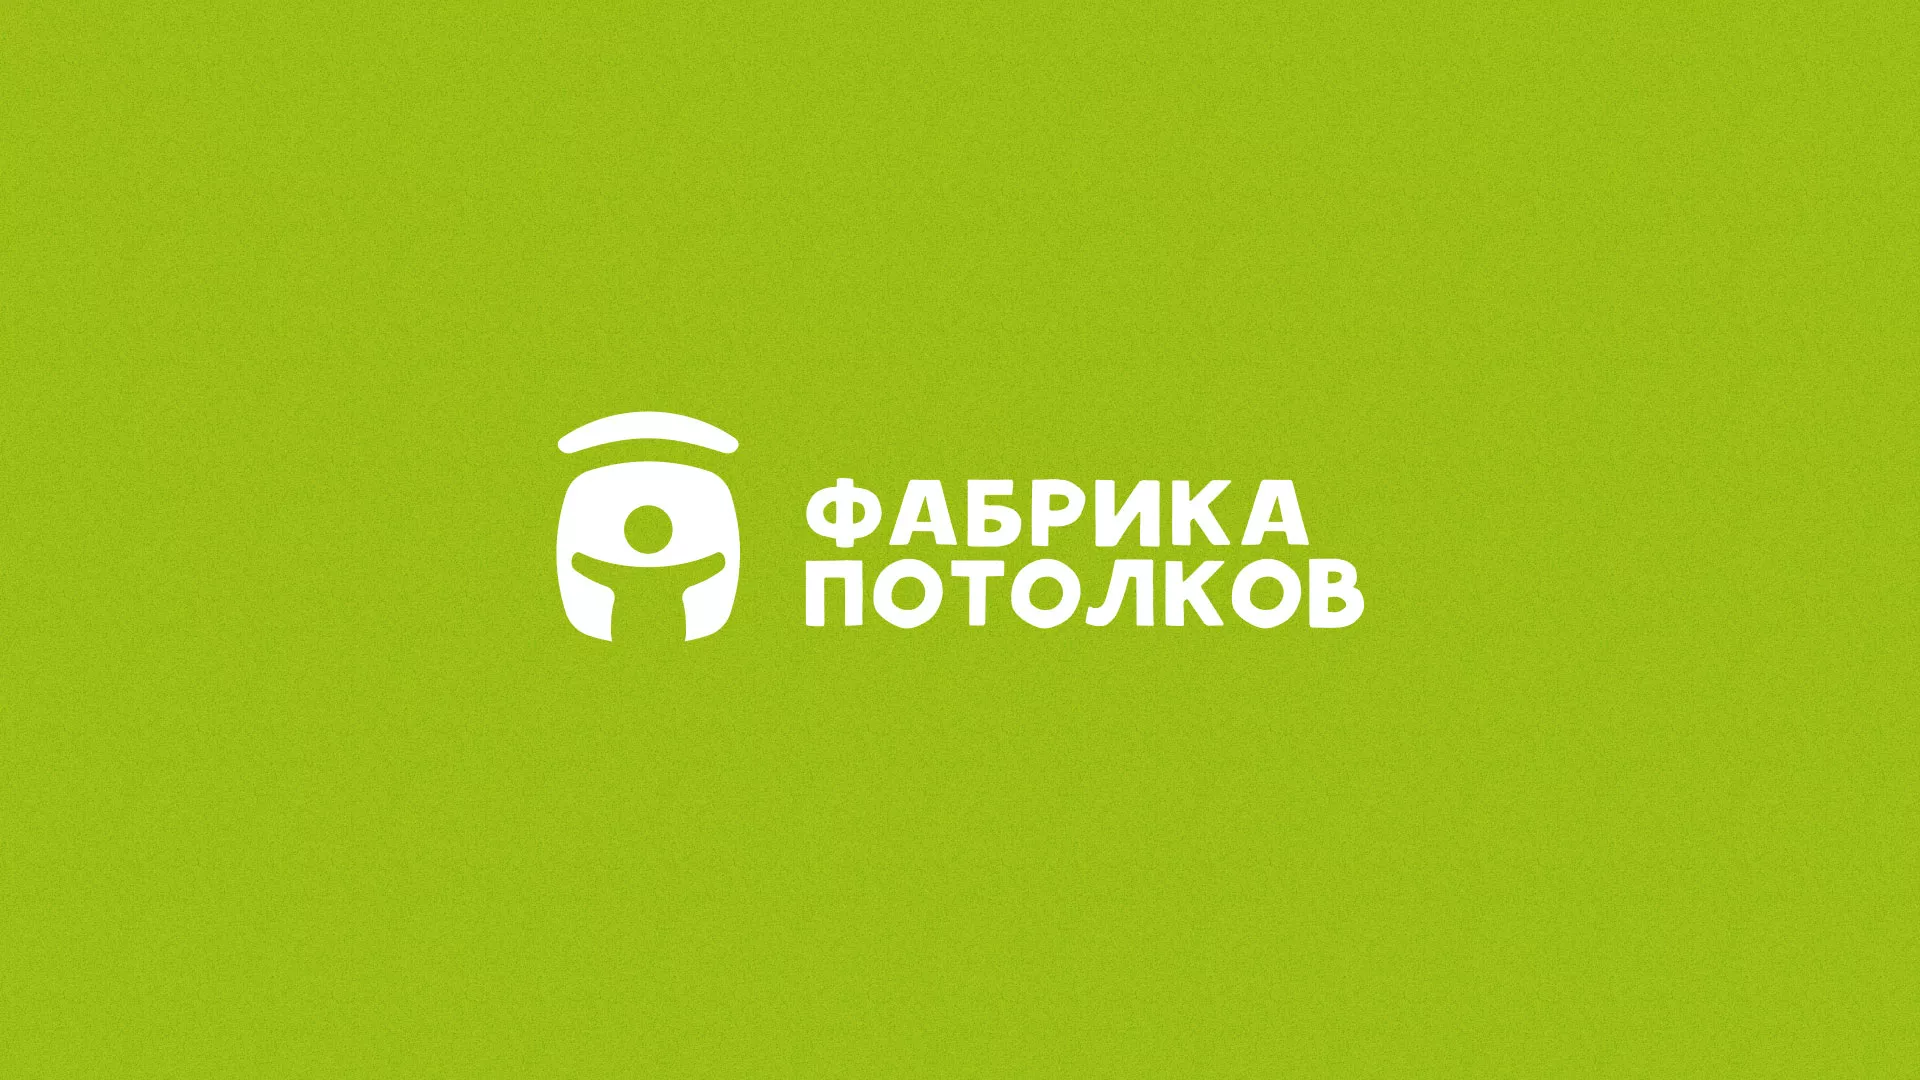 Разработка логотипа для производства натяжных потолков в Воркуте